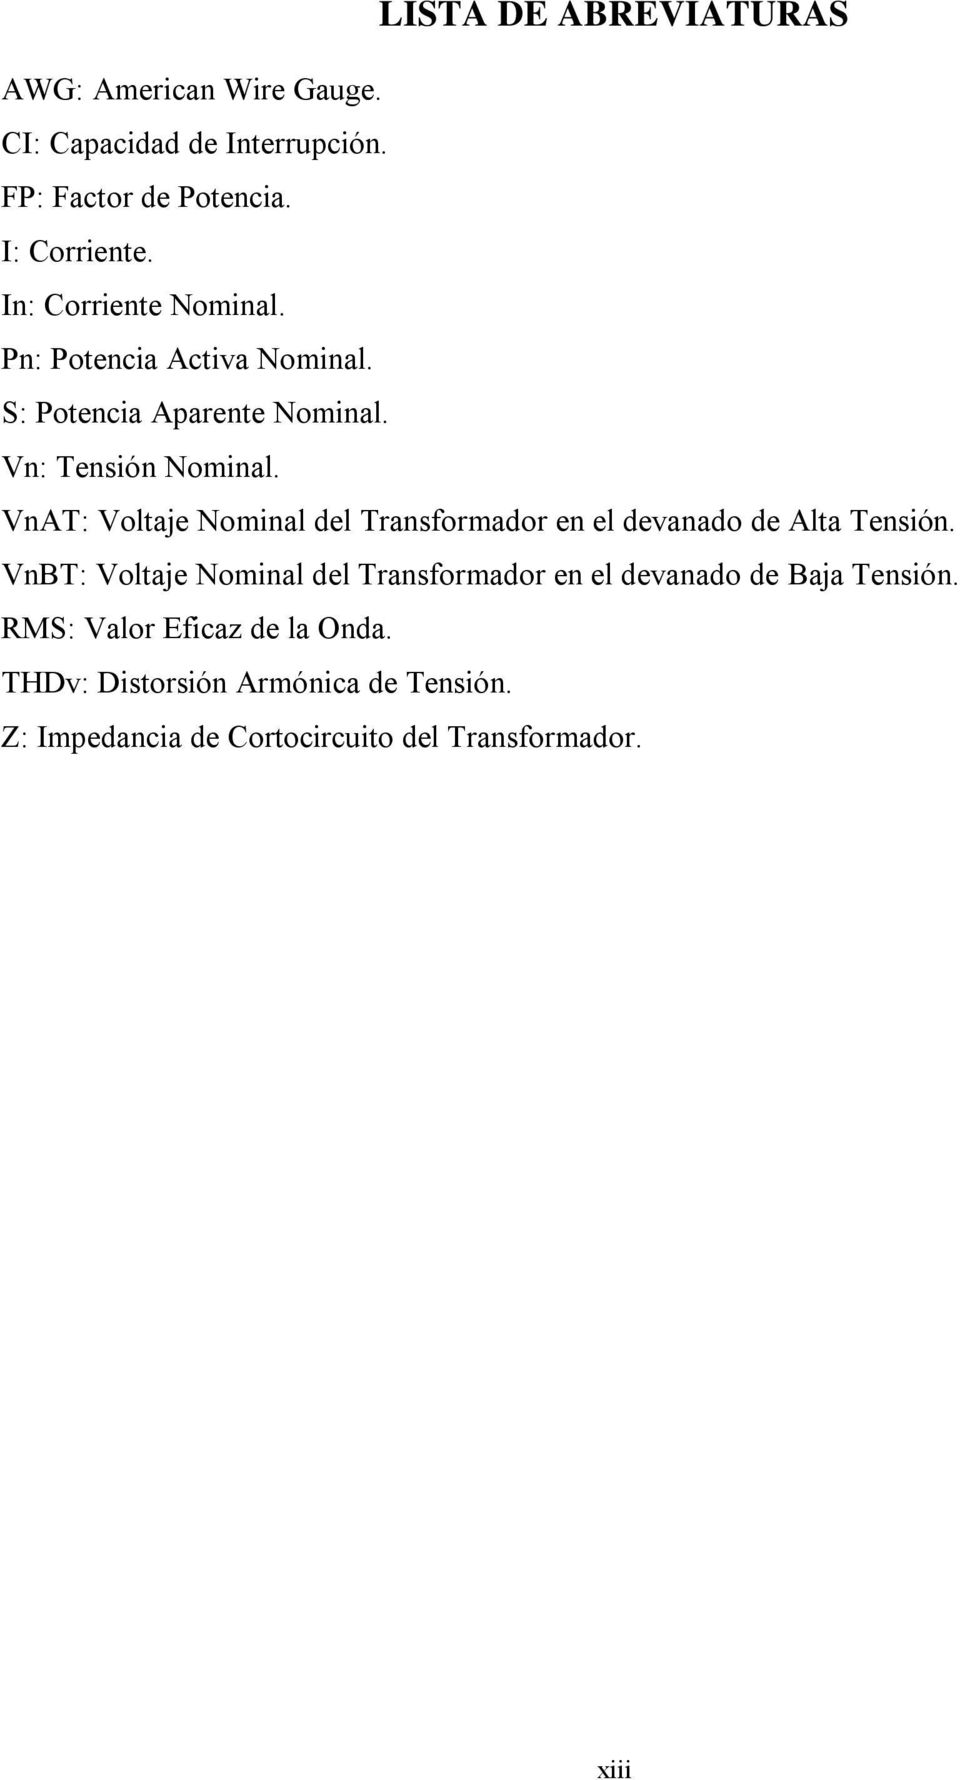 VnAT: Voltaje Nominal del Transformador en el devanado de Alta Tensión.